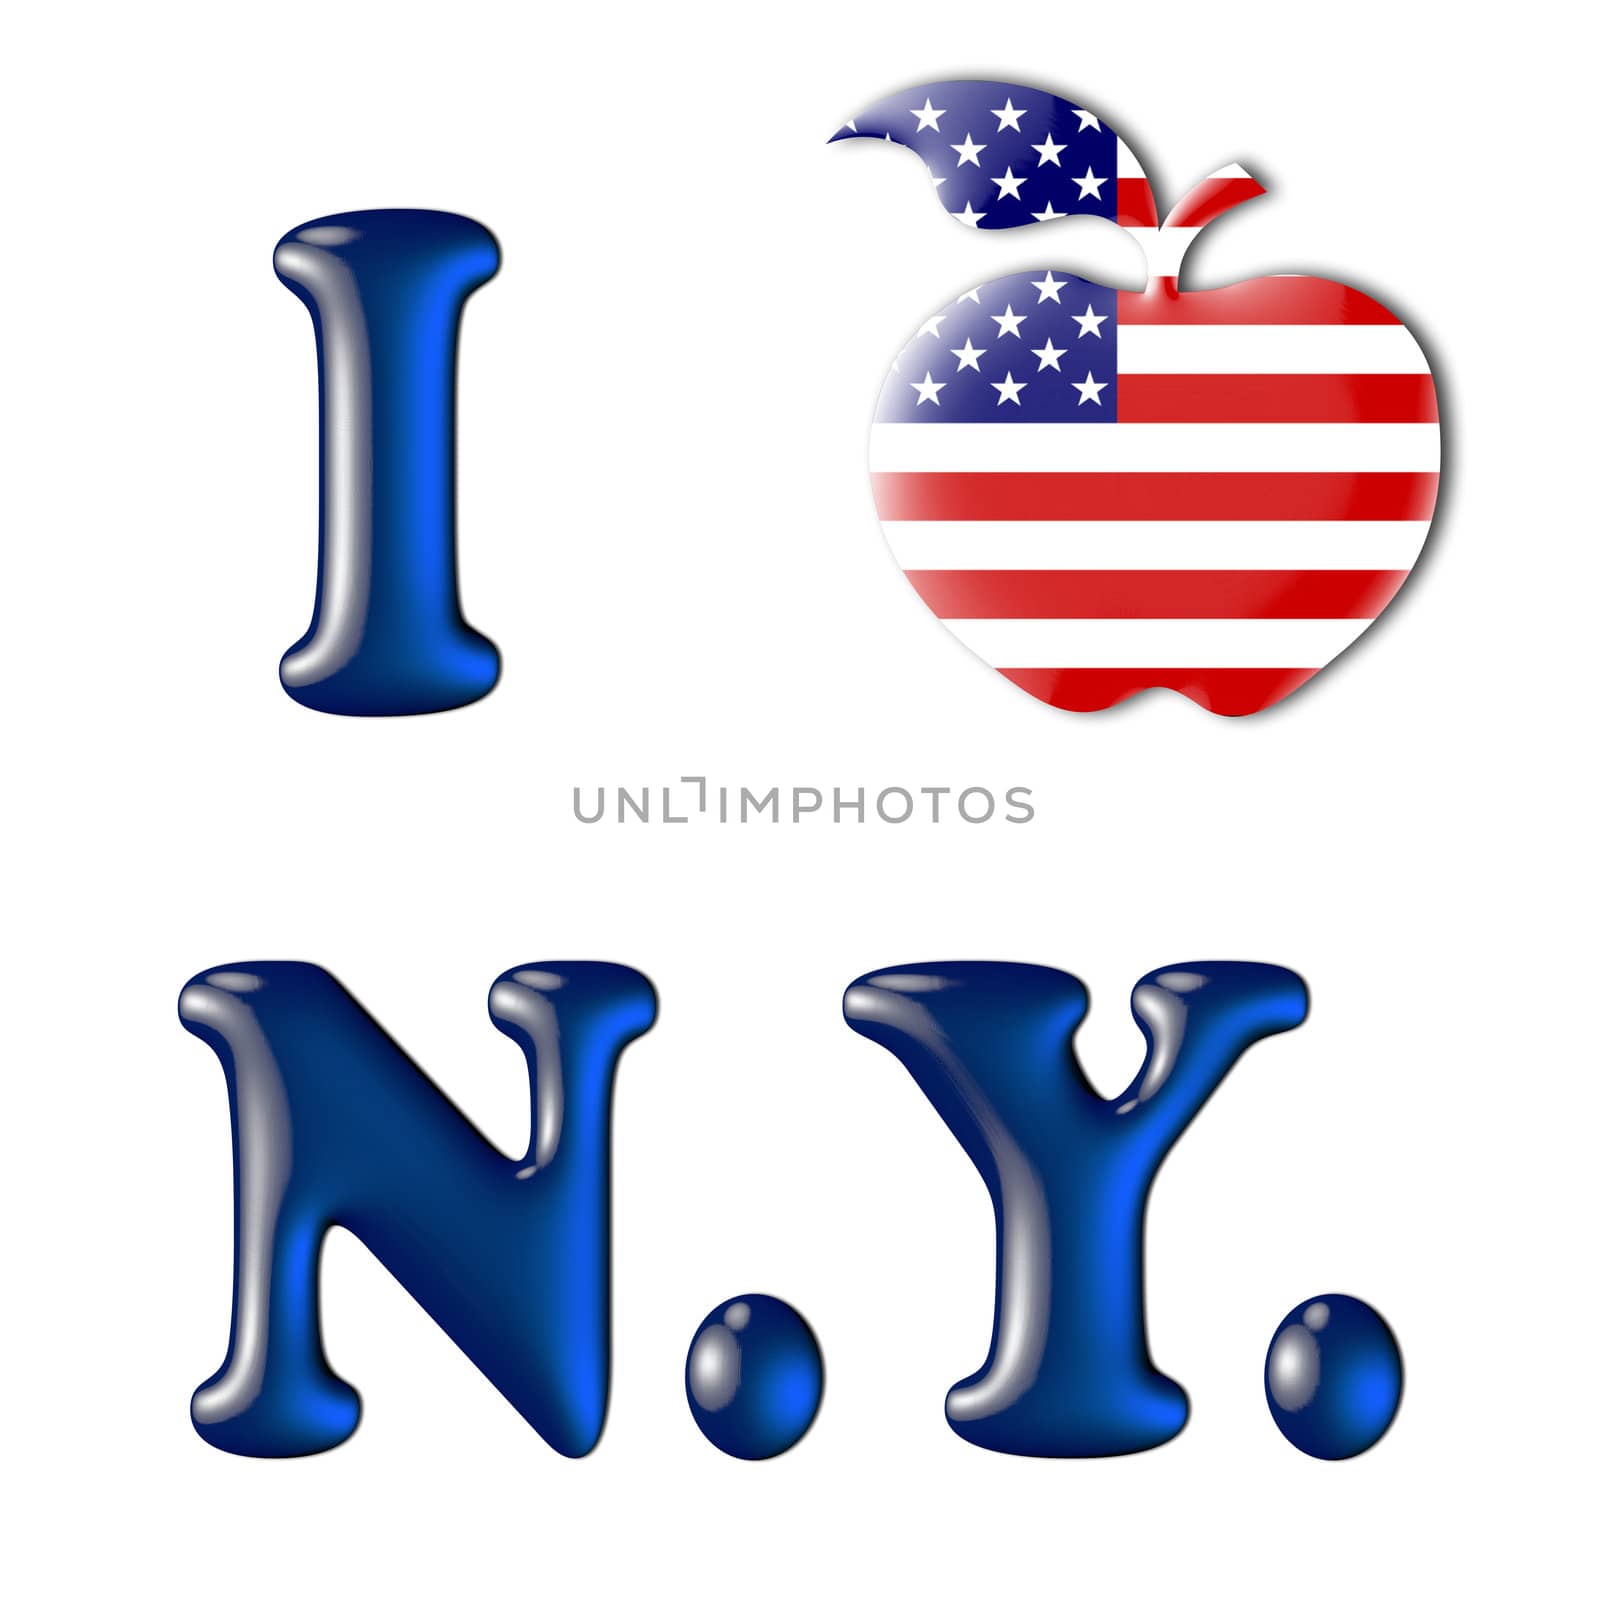 Big Apple with USA Flag - I love New York